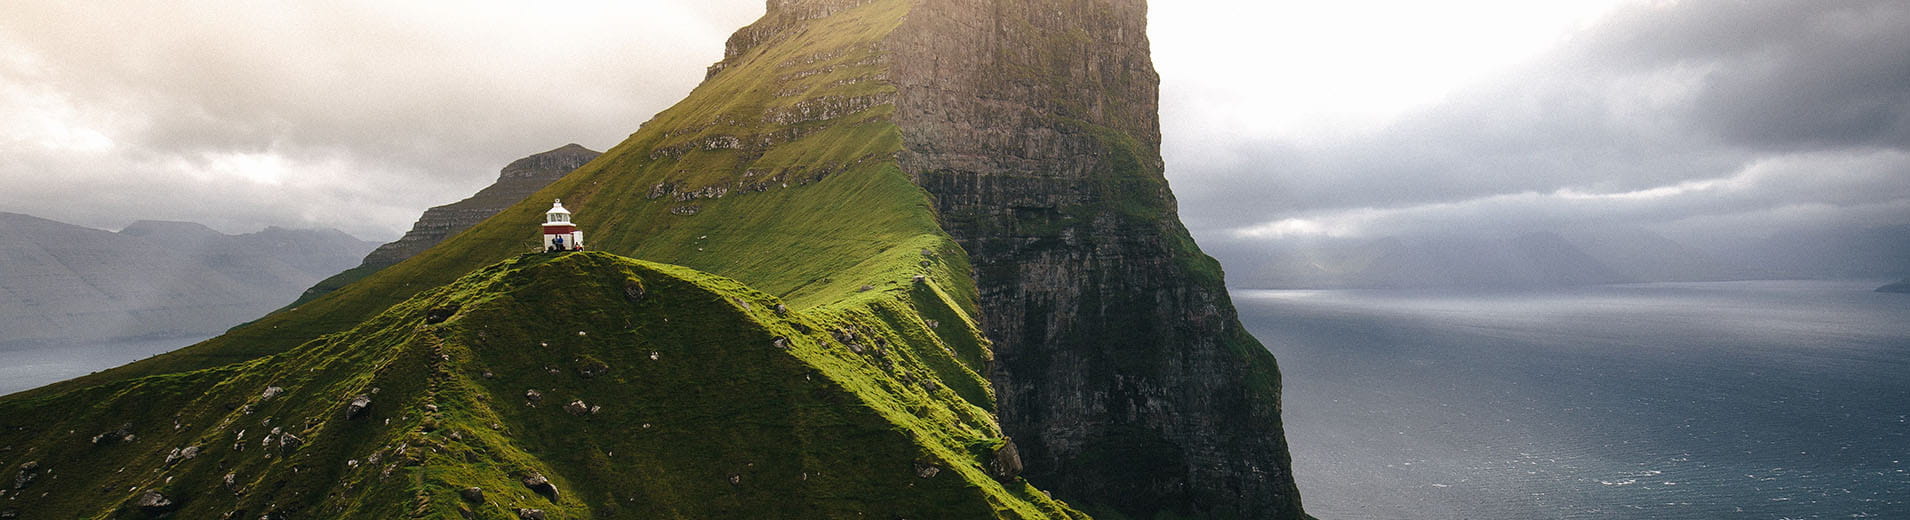 Mountain_At_Faroe_Island_S_2297